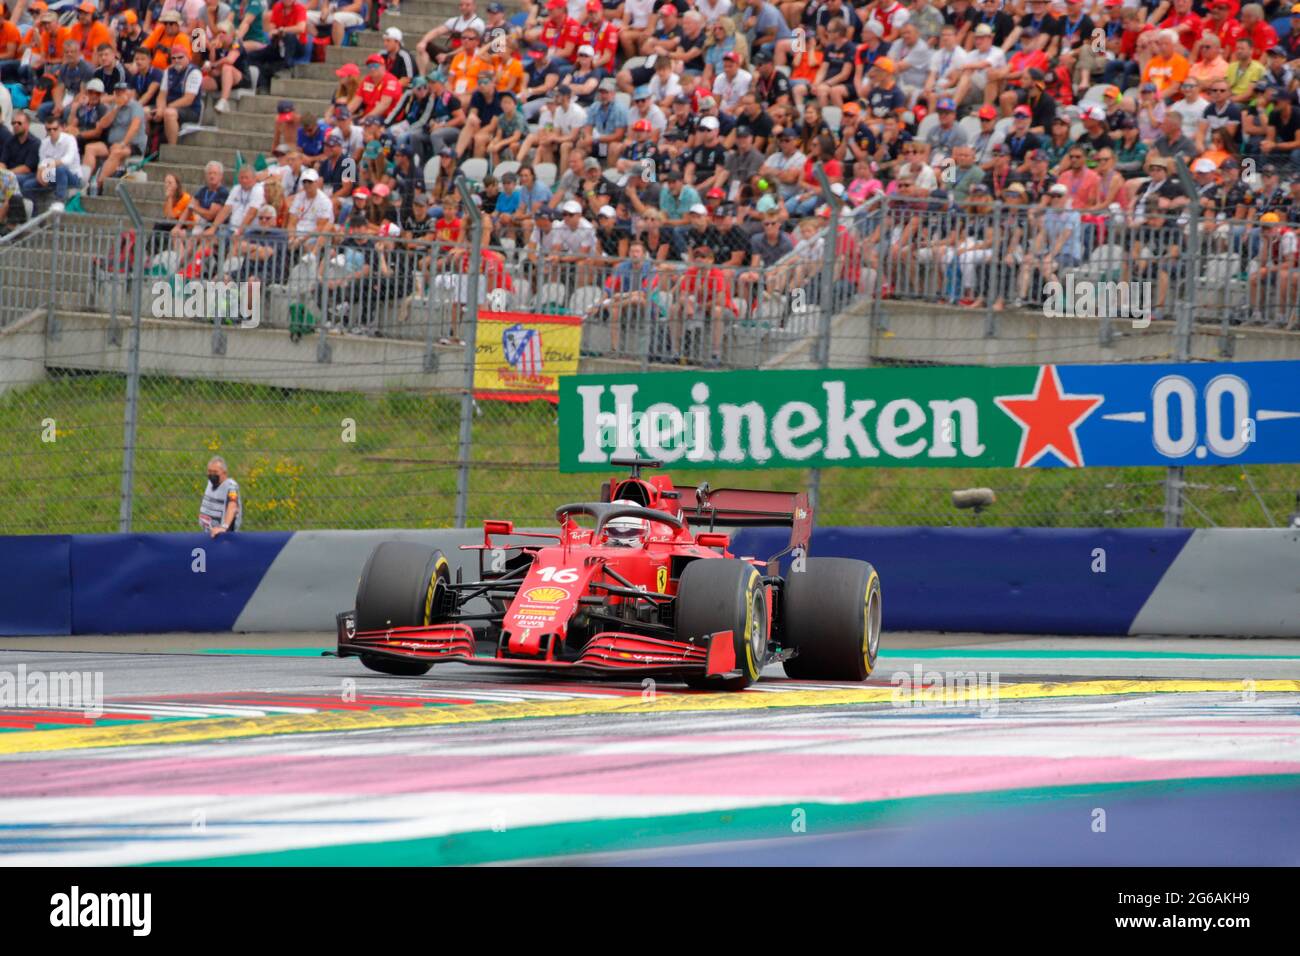 Charles le Clerc Ferrari Mission Winnow pilote sa voiture lors de la course autrichienne du Grand Prix de Formule 1 le 4 juillet 2021 à Spielberg, en Autriche. Banque D'Images